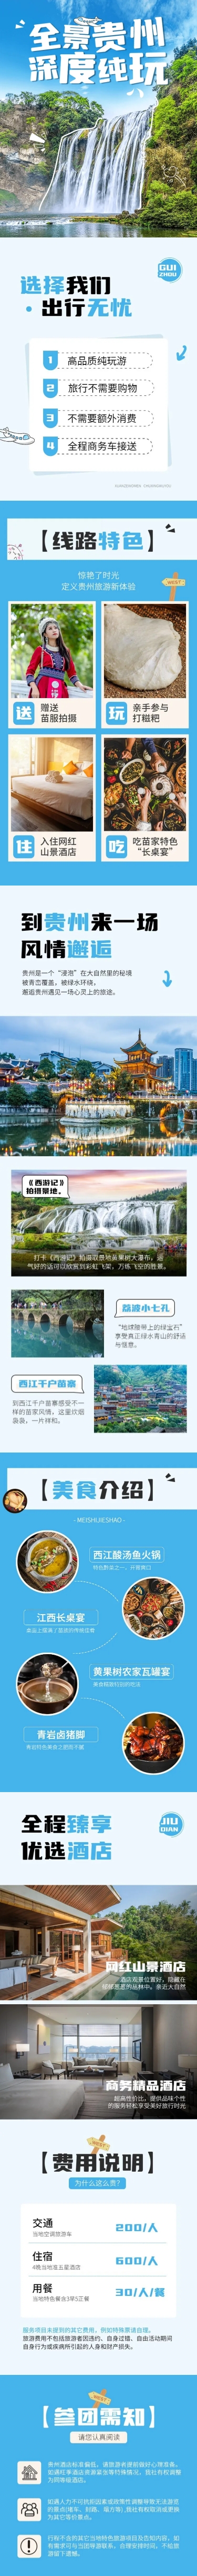 旅游出行贵州线路营销详情页